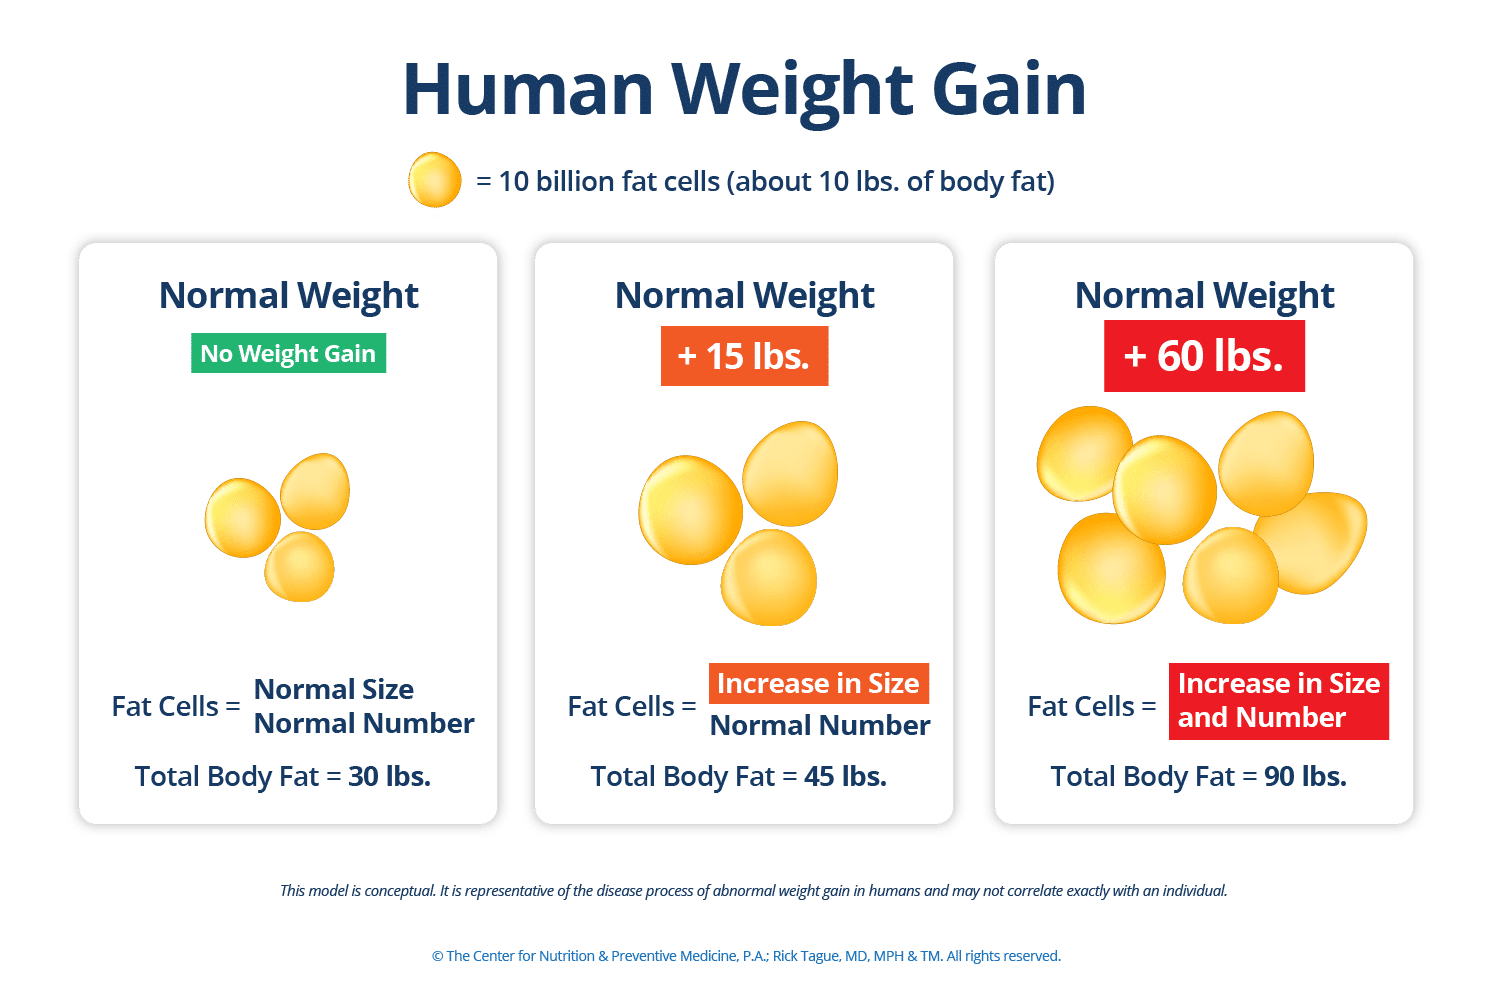 Human Weight Gain